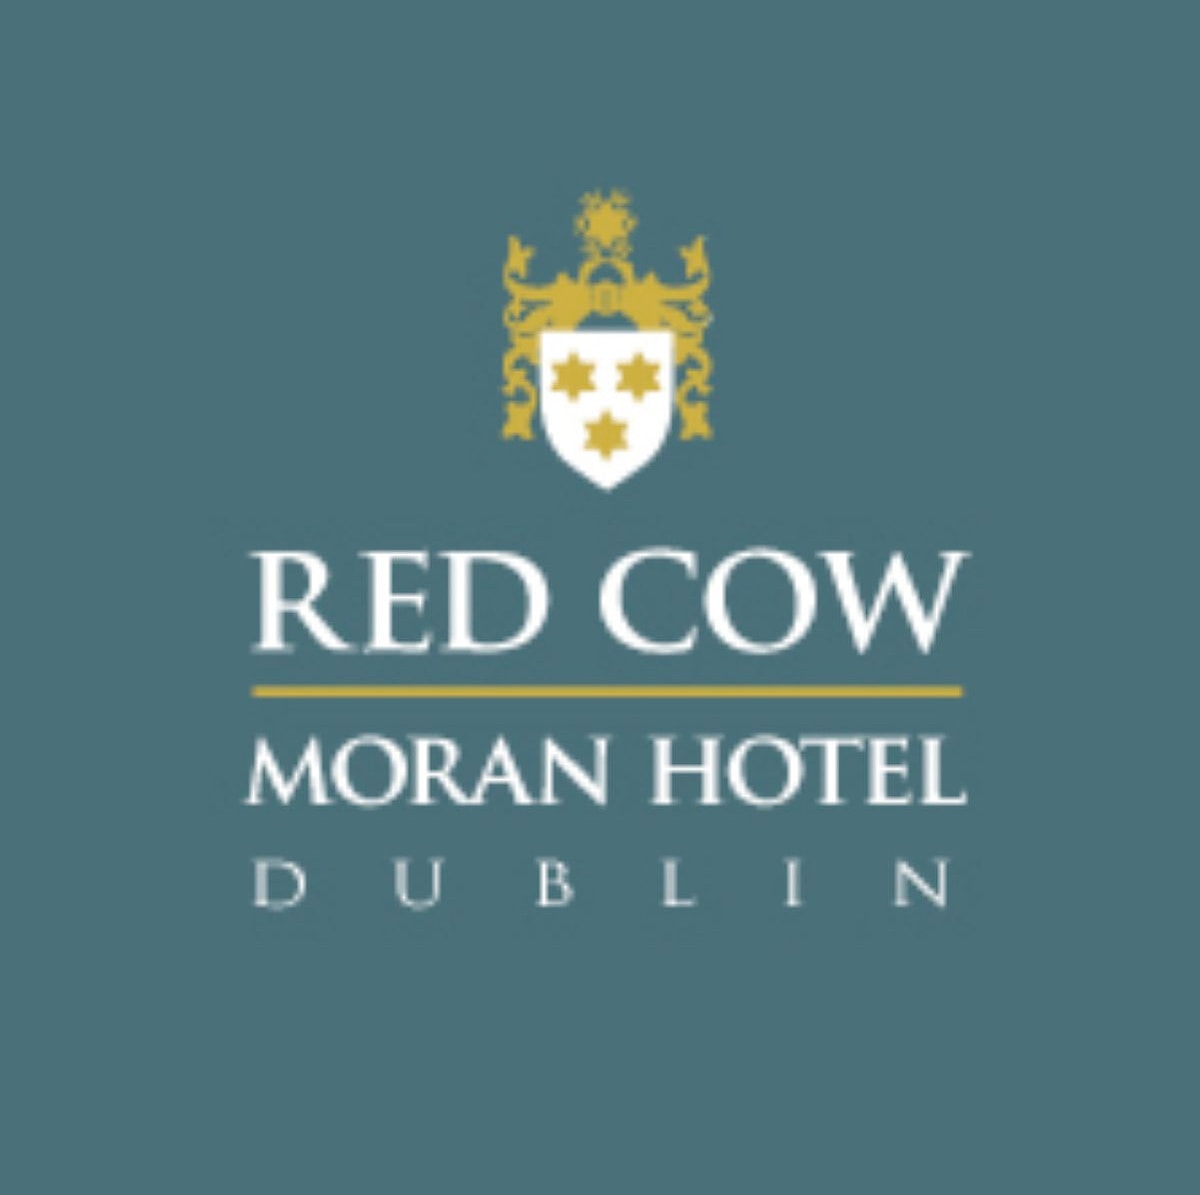 Red Cow Moran